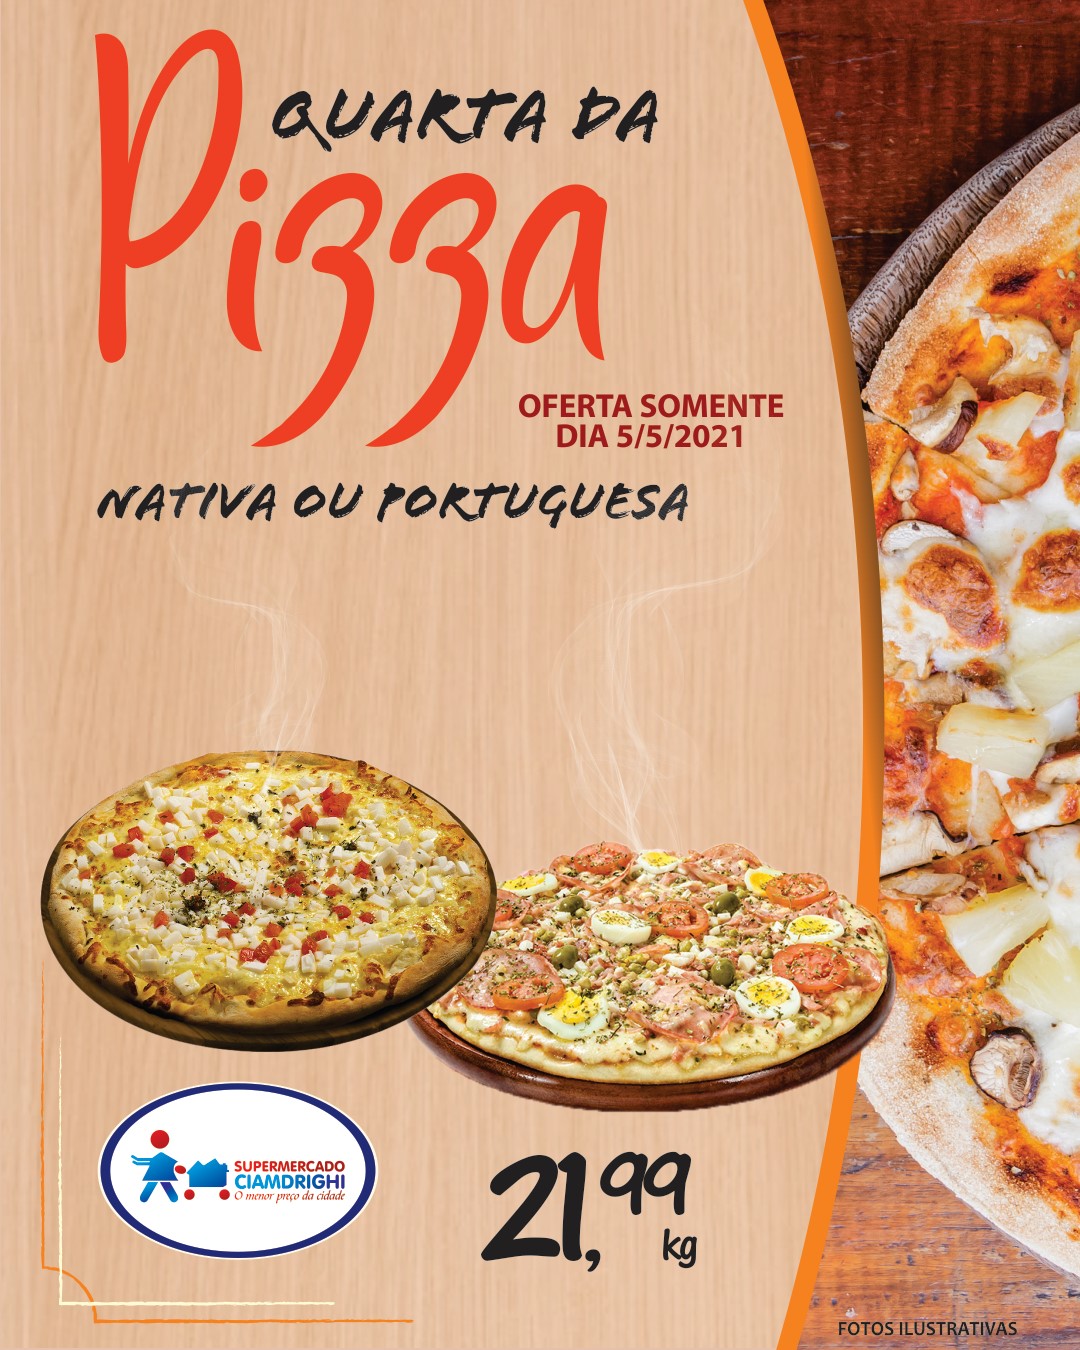 Ciamdrighi tem ofertas em pizzas, hortifrúti e mais 50 opções para o Dia das Mães